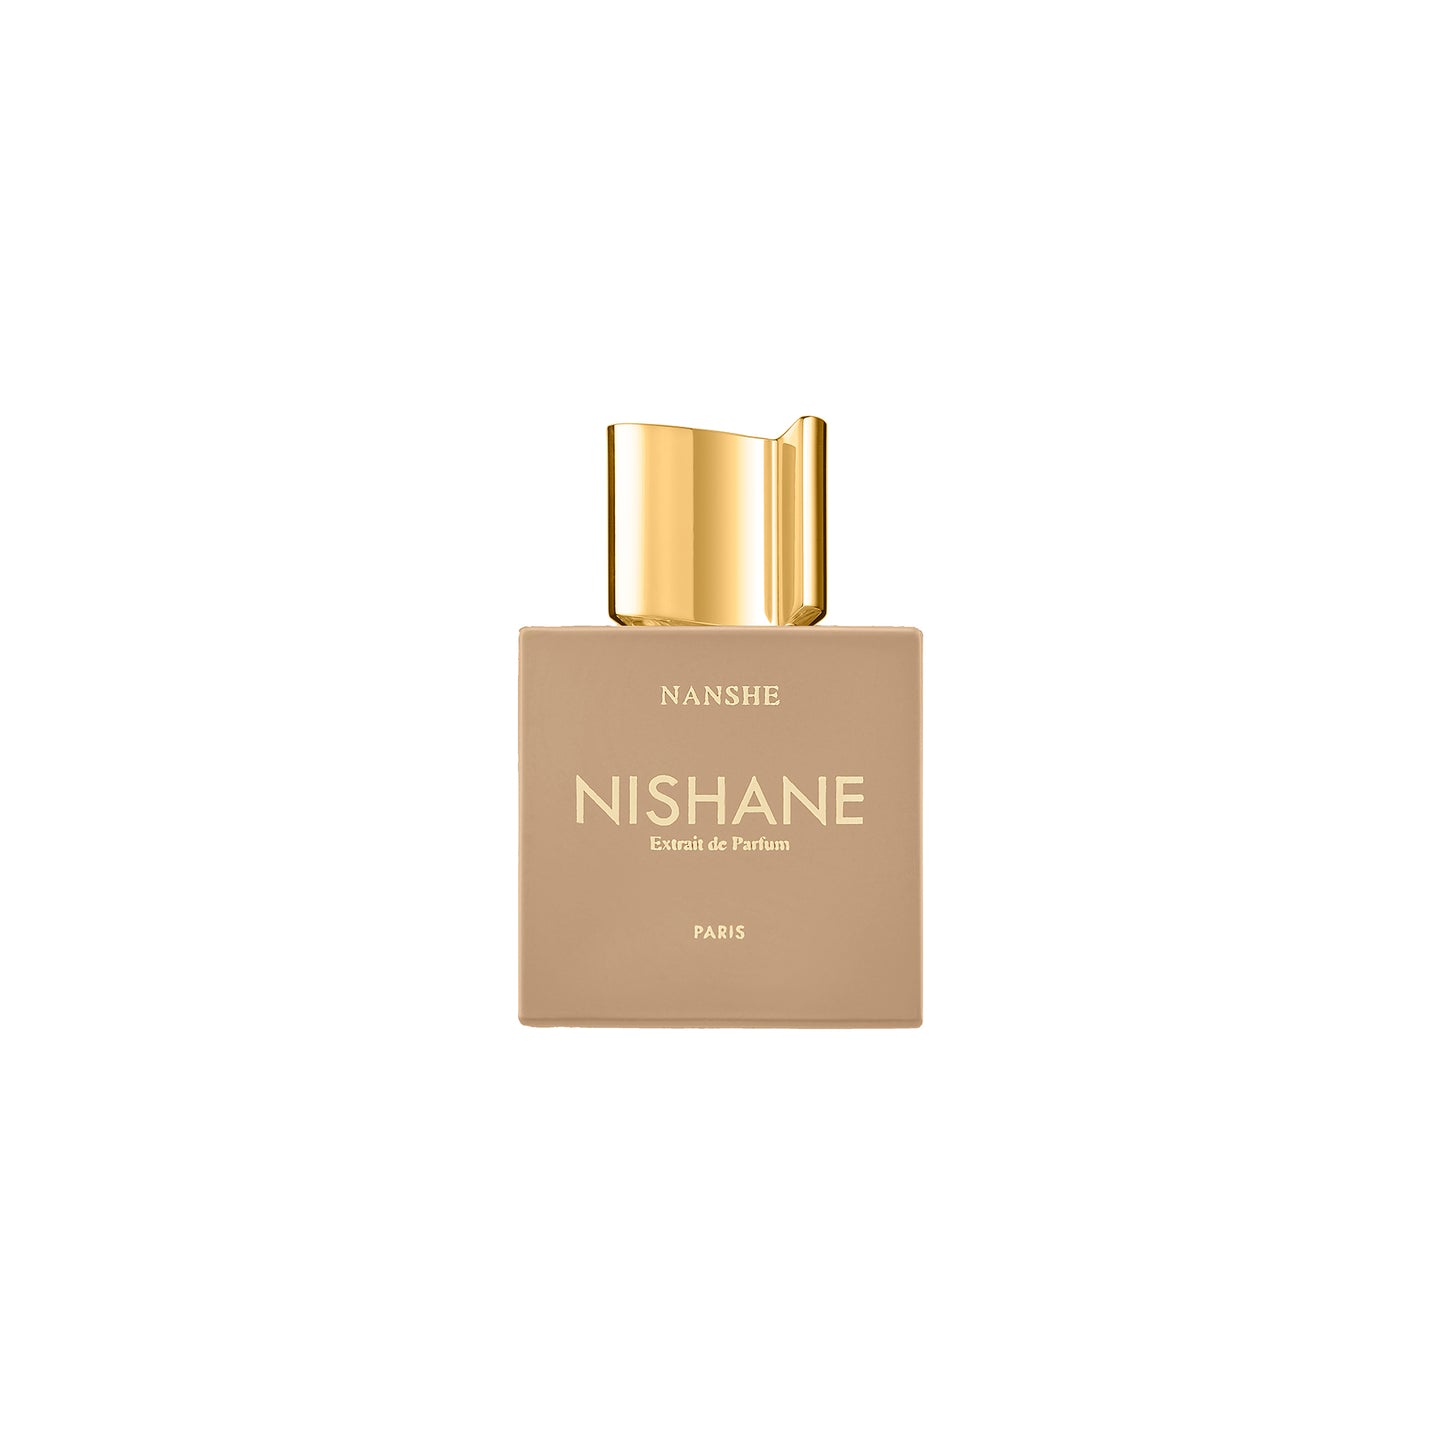 Nanshe 3.4oz Extrait de Parfum